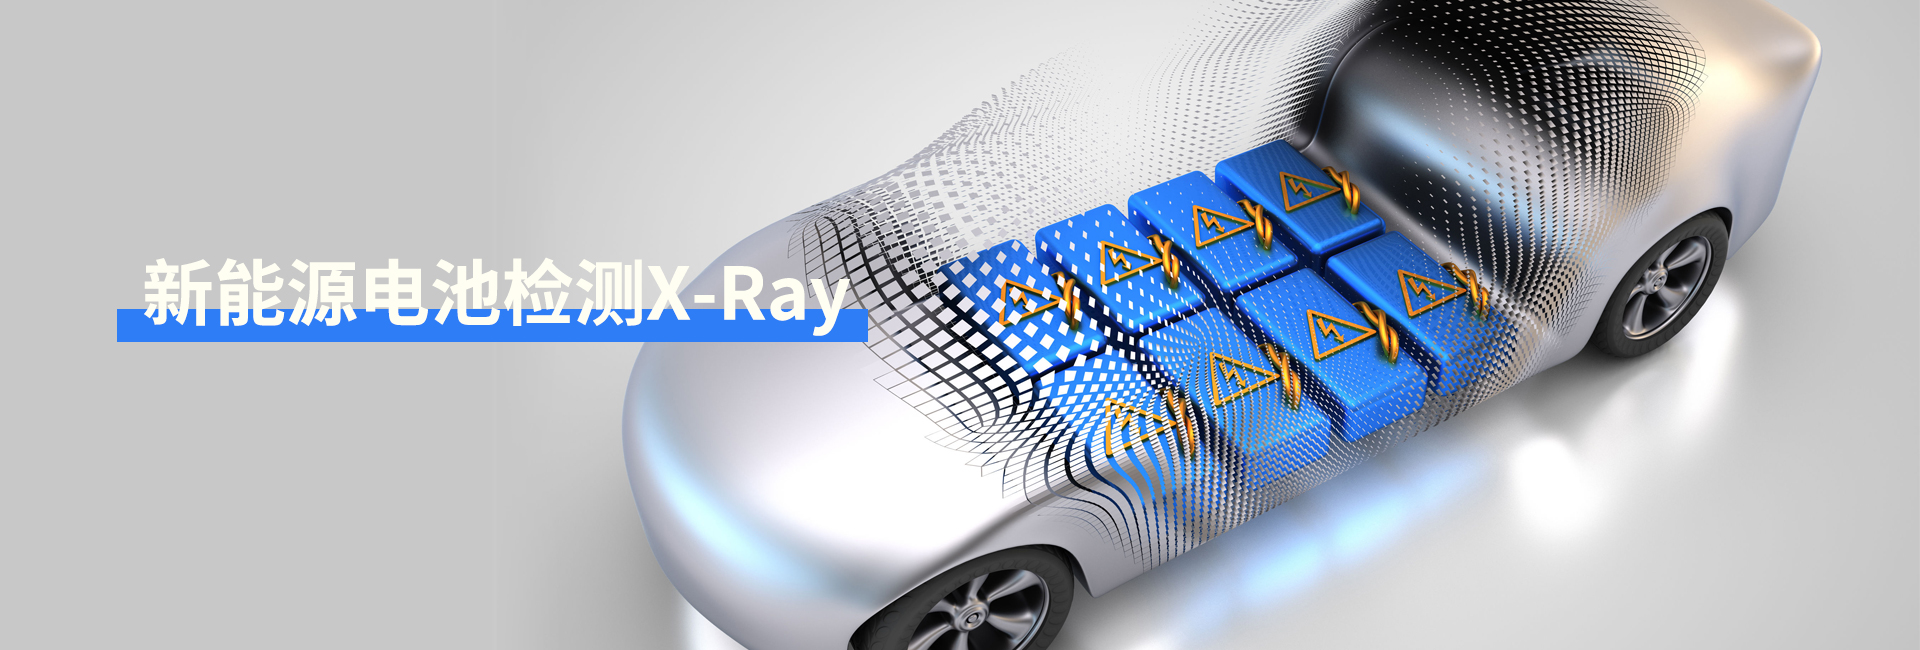 x-ray锂电池检测设备